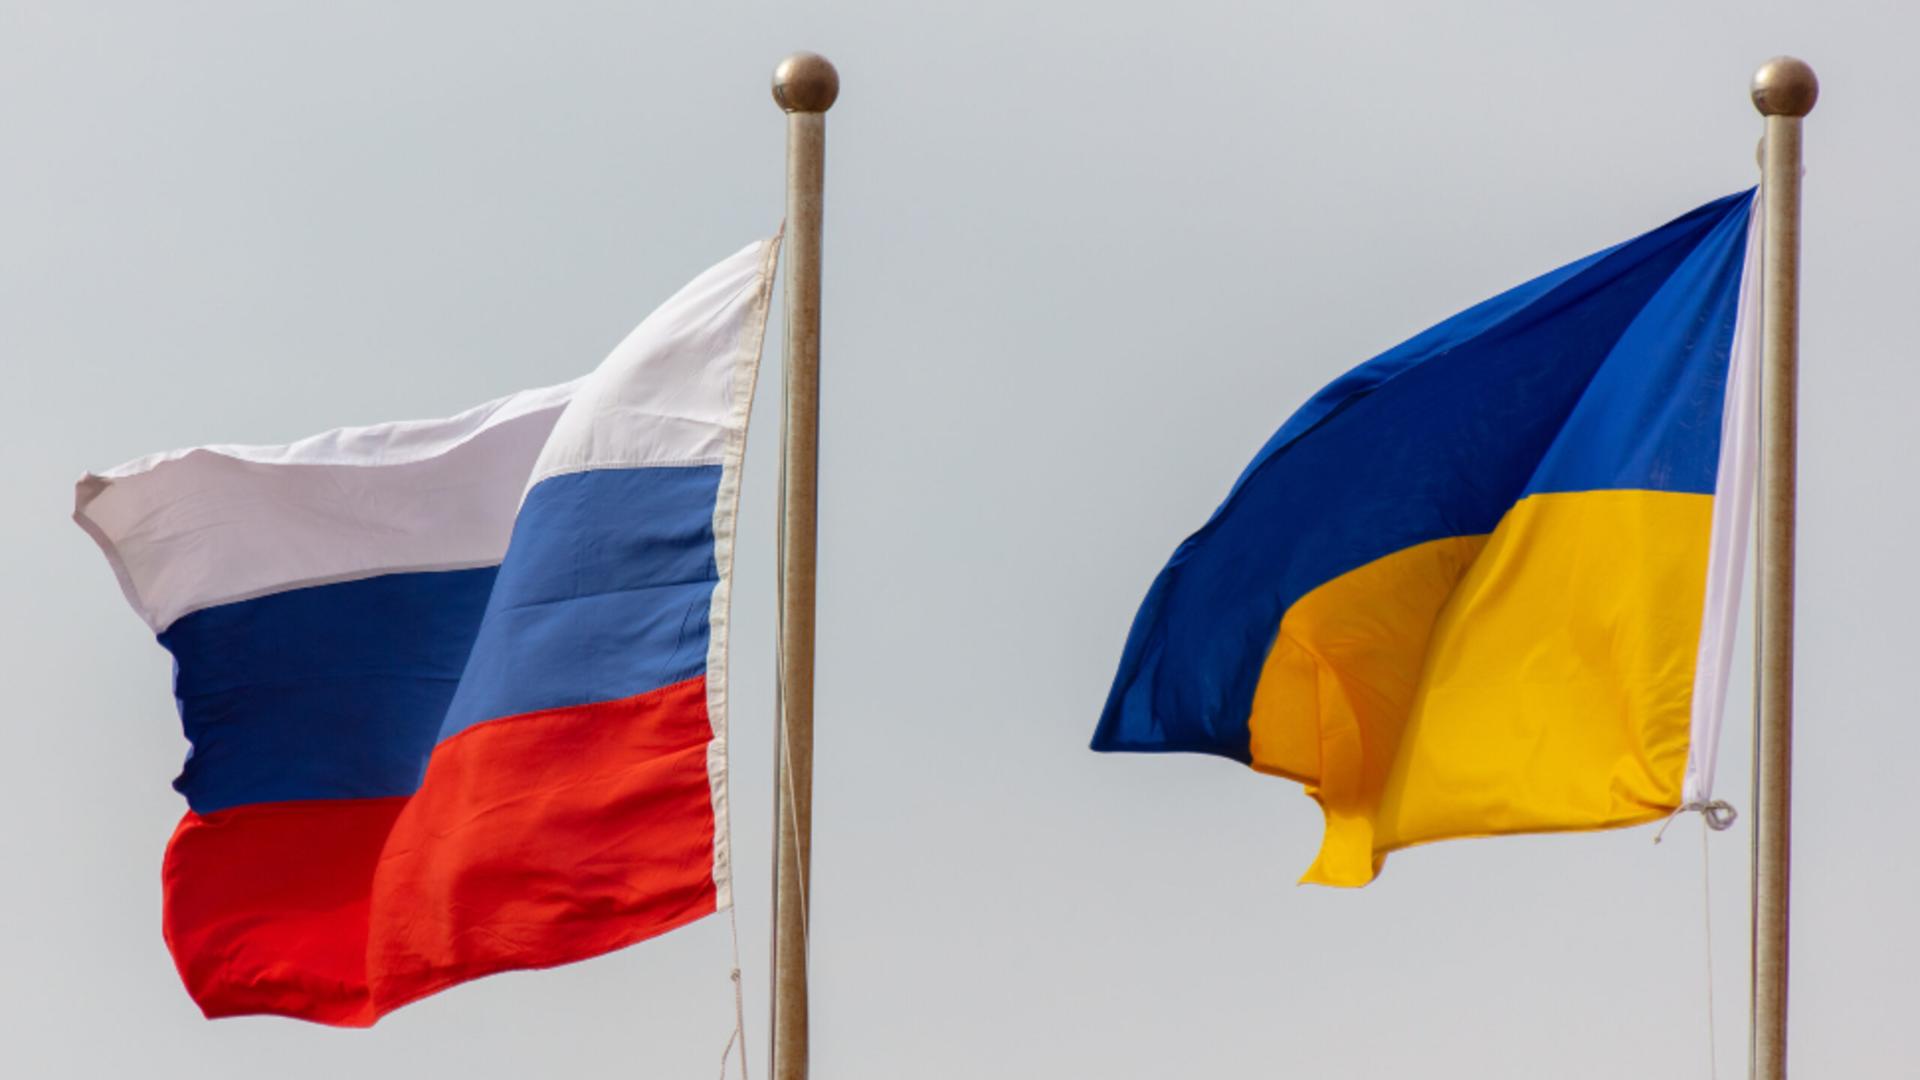 Război în Ucraina, ziua 803: Rusia plănuieşte acte violente de sabotaj în toată Europa, avertizează serviciile de informaţii